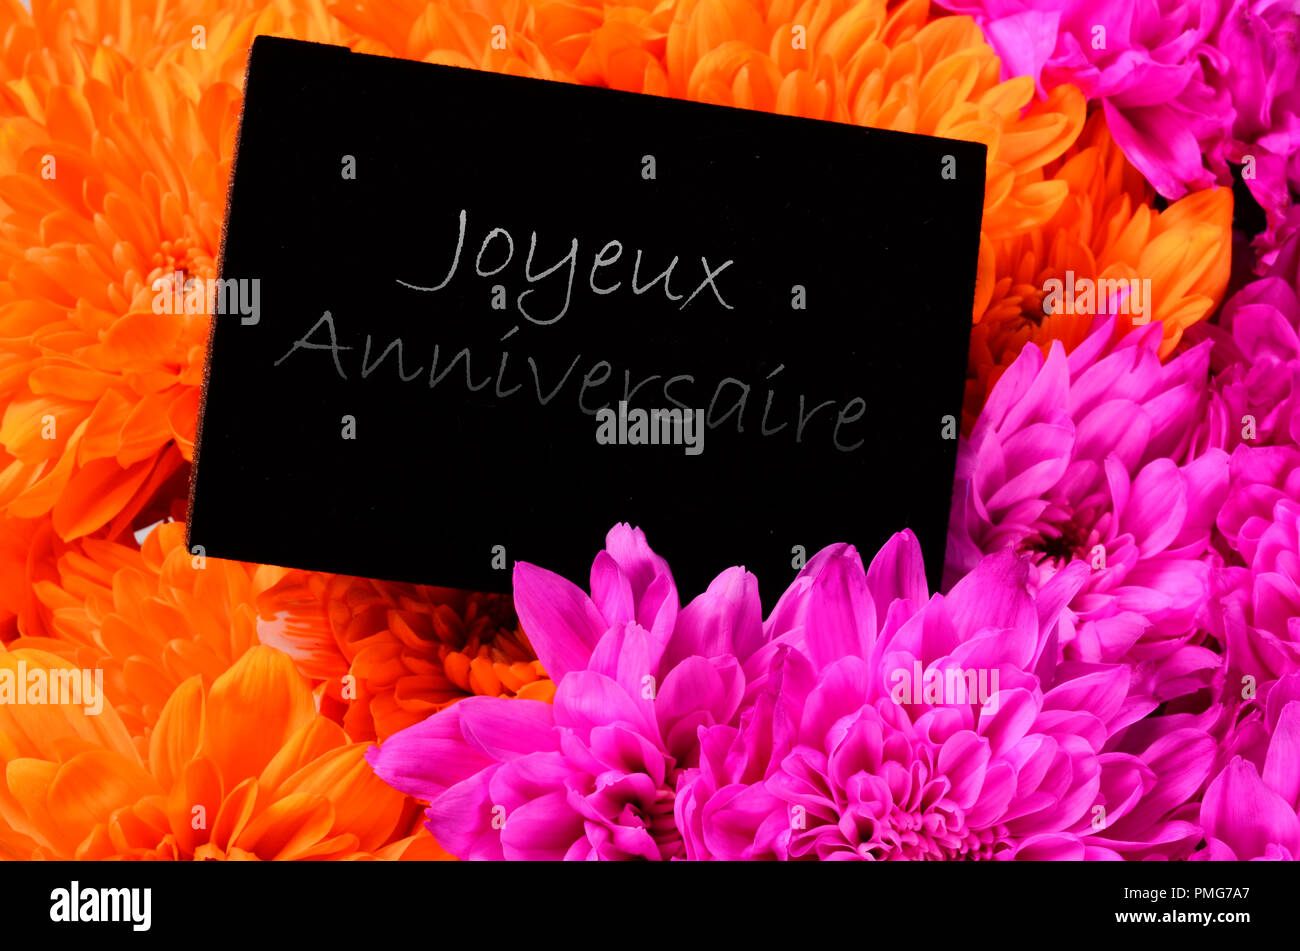 Orange et rose fleur aster, et de carton noir pour joyeux anniversaire bonjour, mots français Banque D'Images